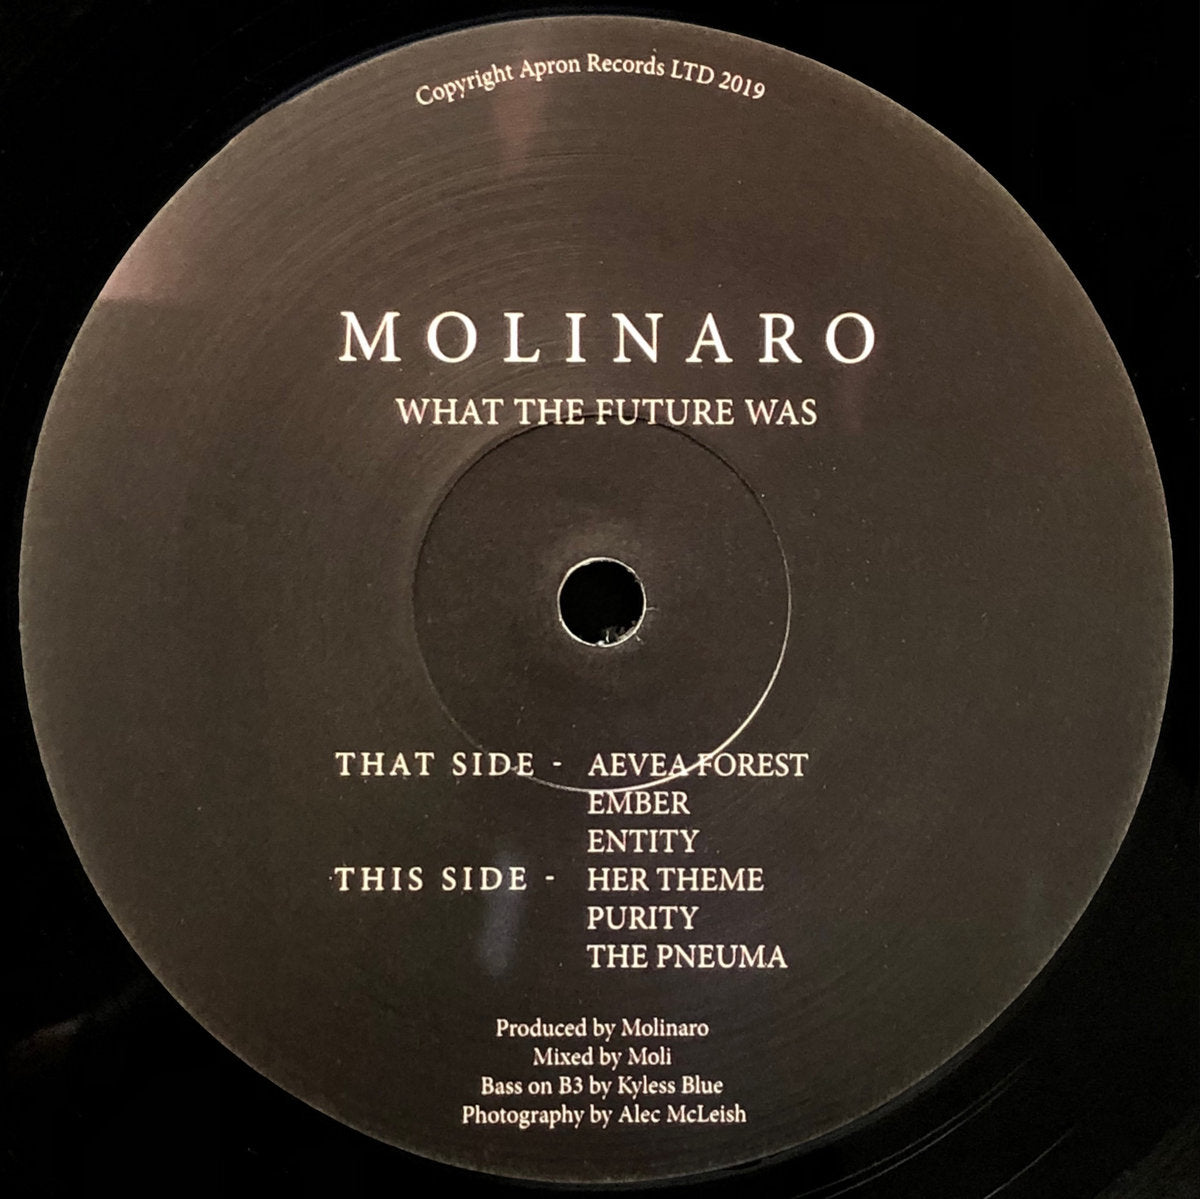 MOLINARO - WHAT THE FUTURE WAS (12")